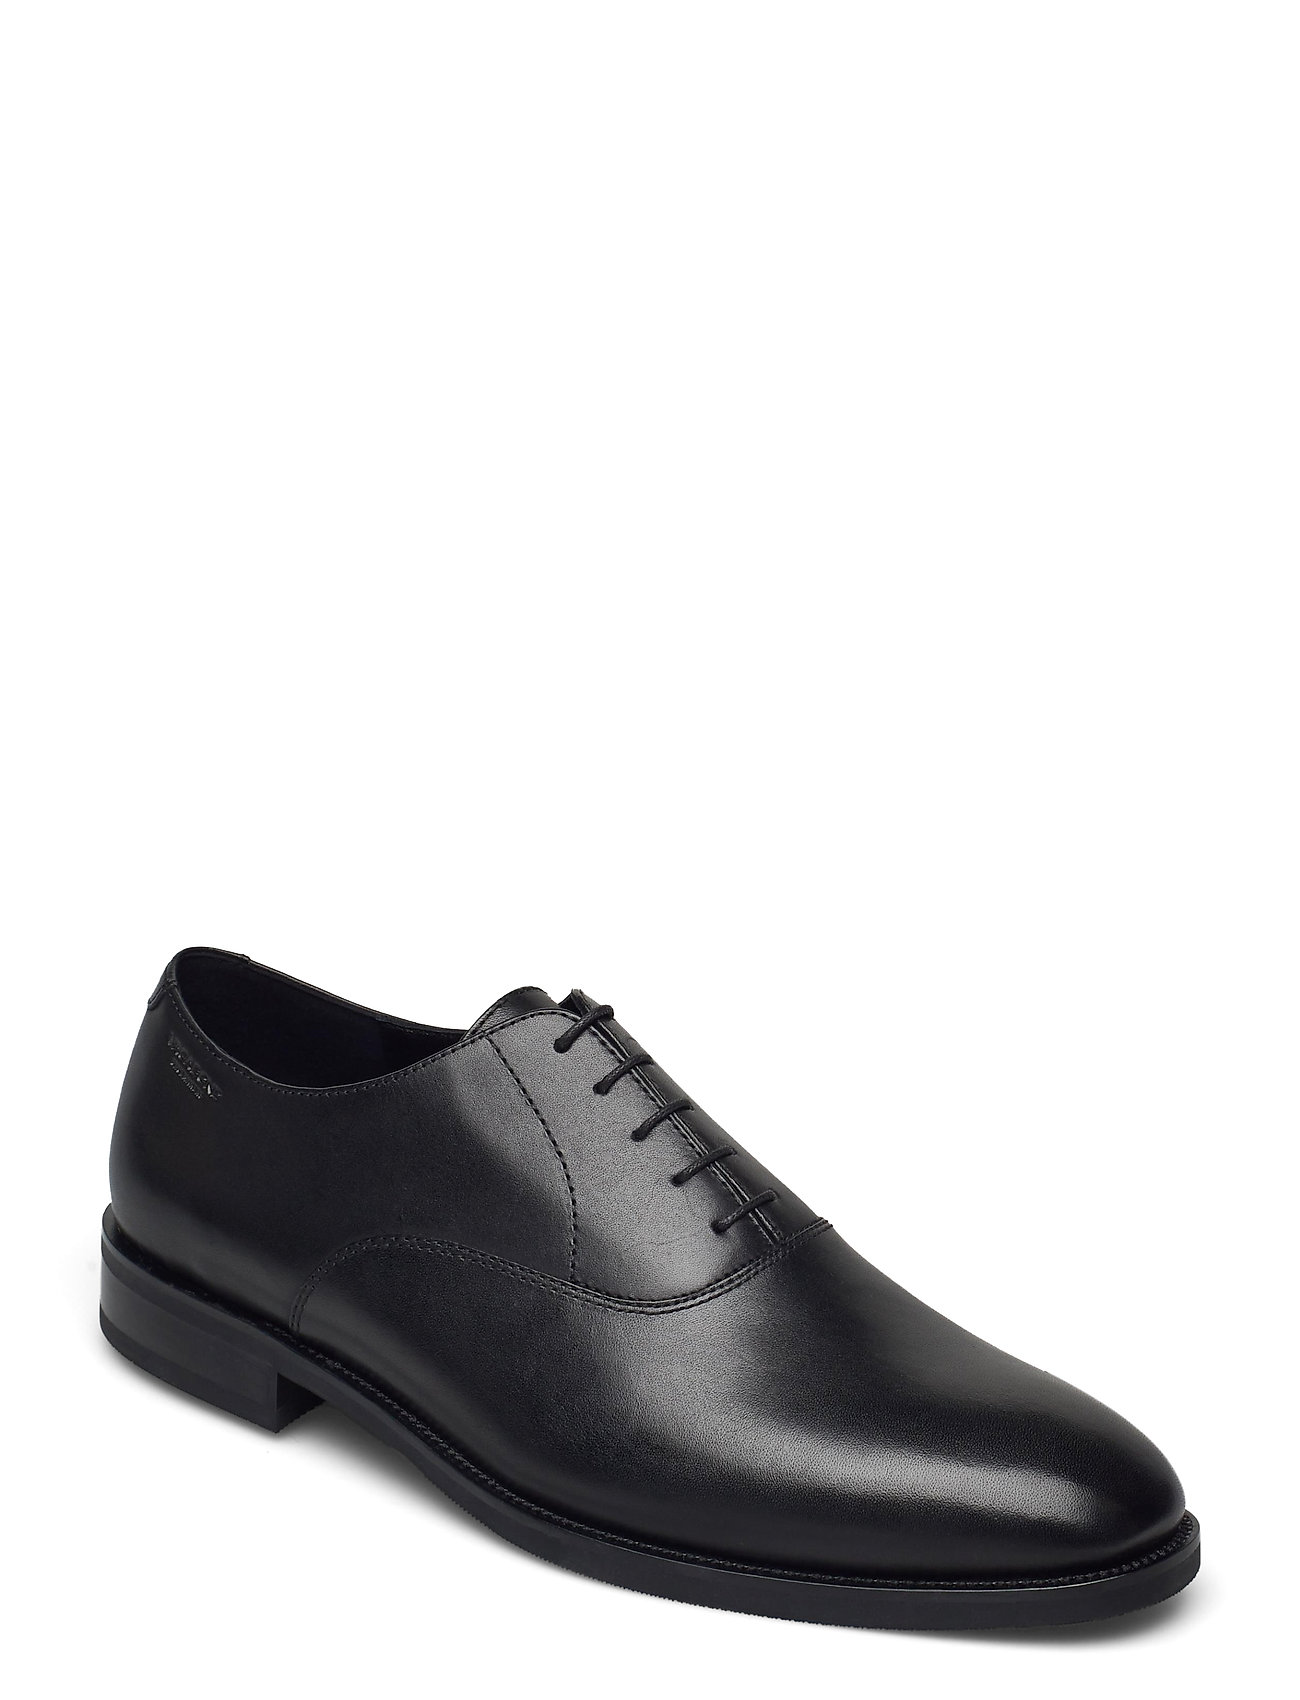 sko – Percy Shoes Business Shoes Sort VAGABOND til herre i Sort - Pashion.dk